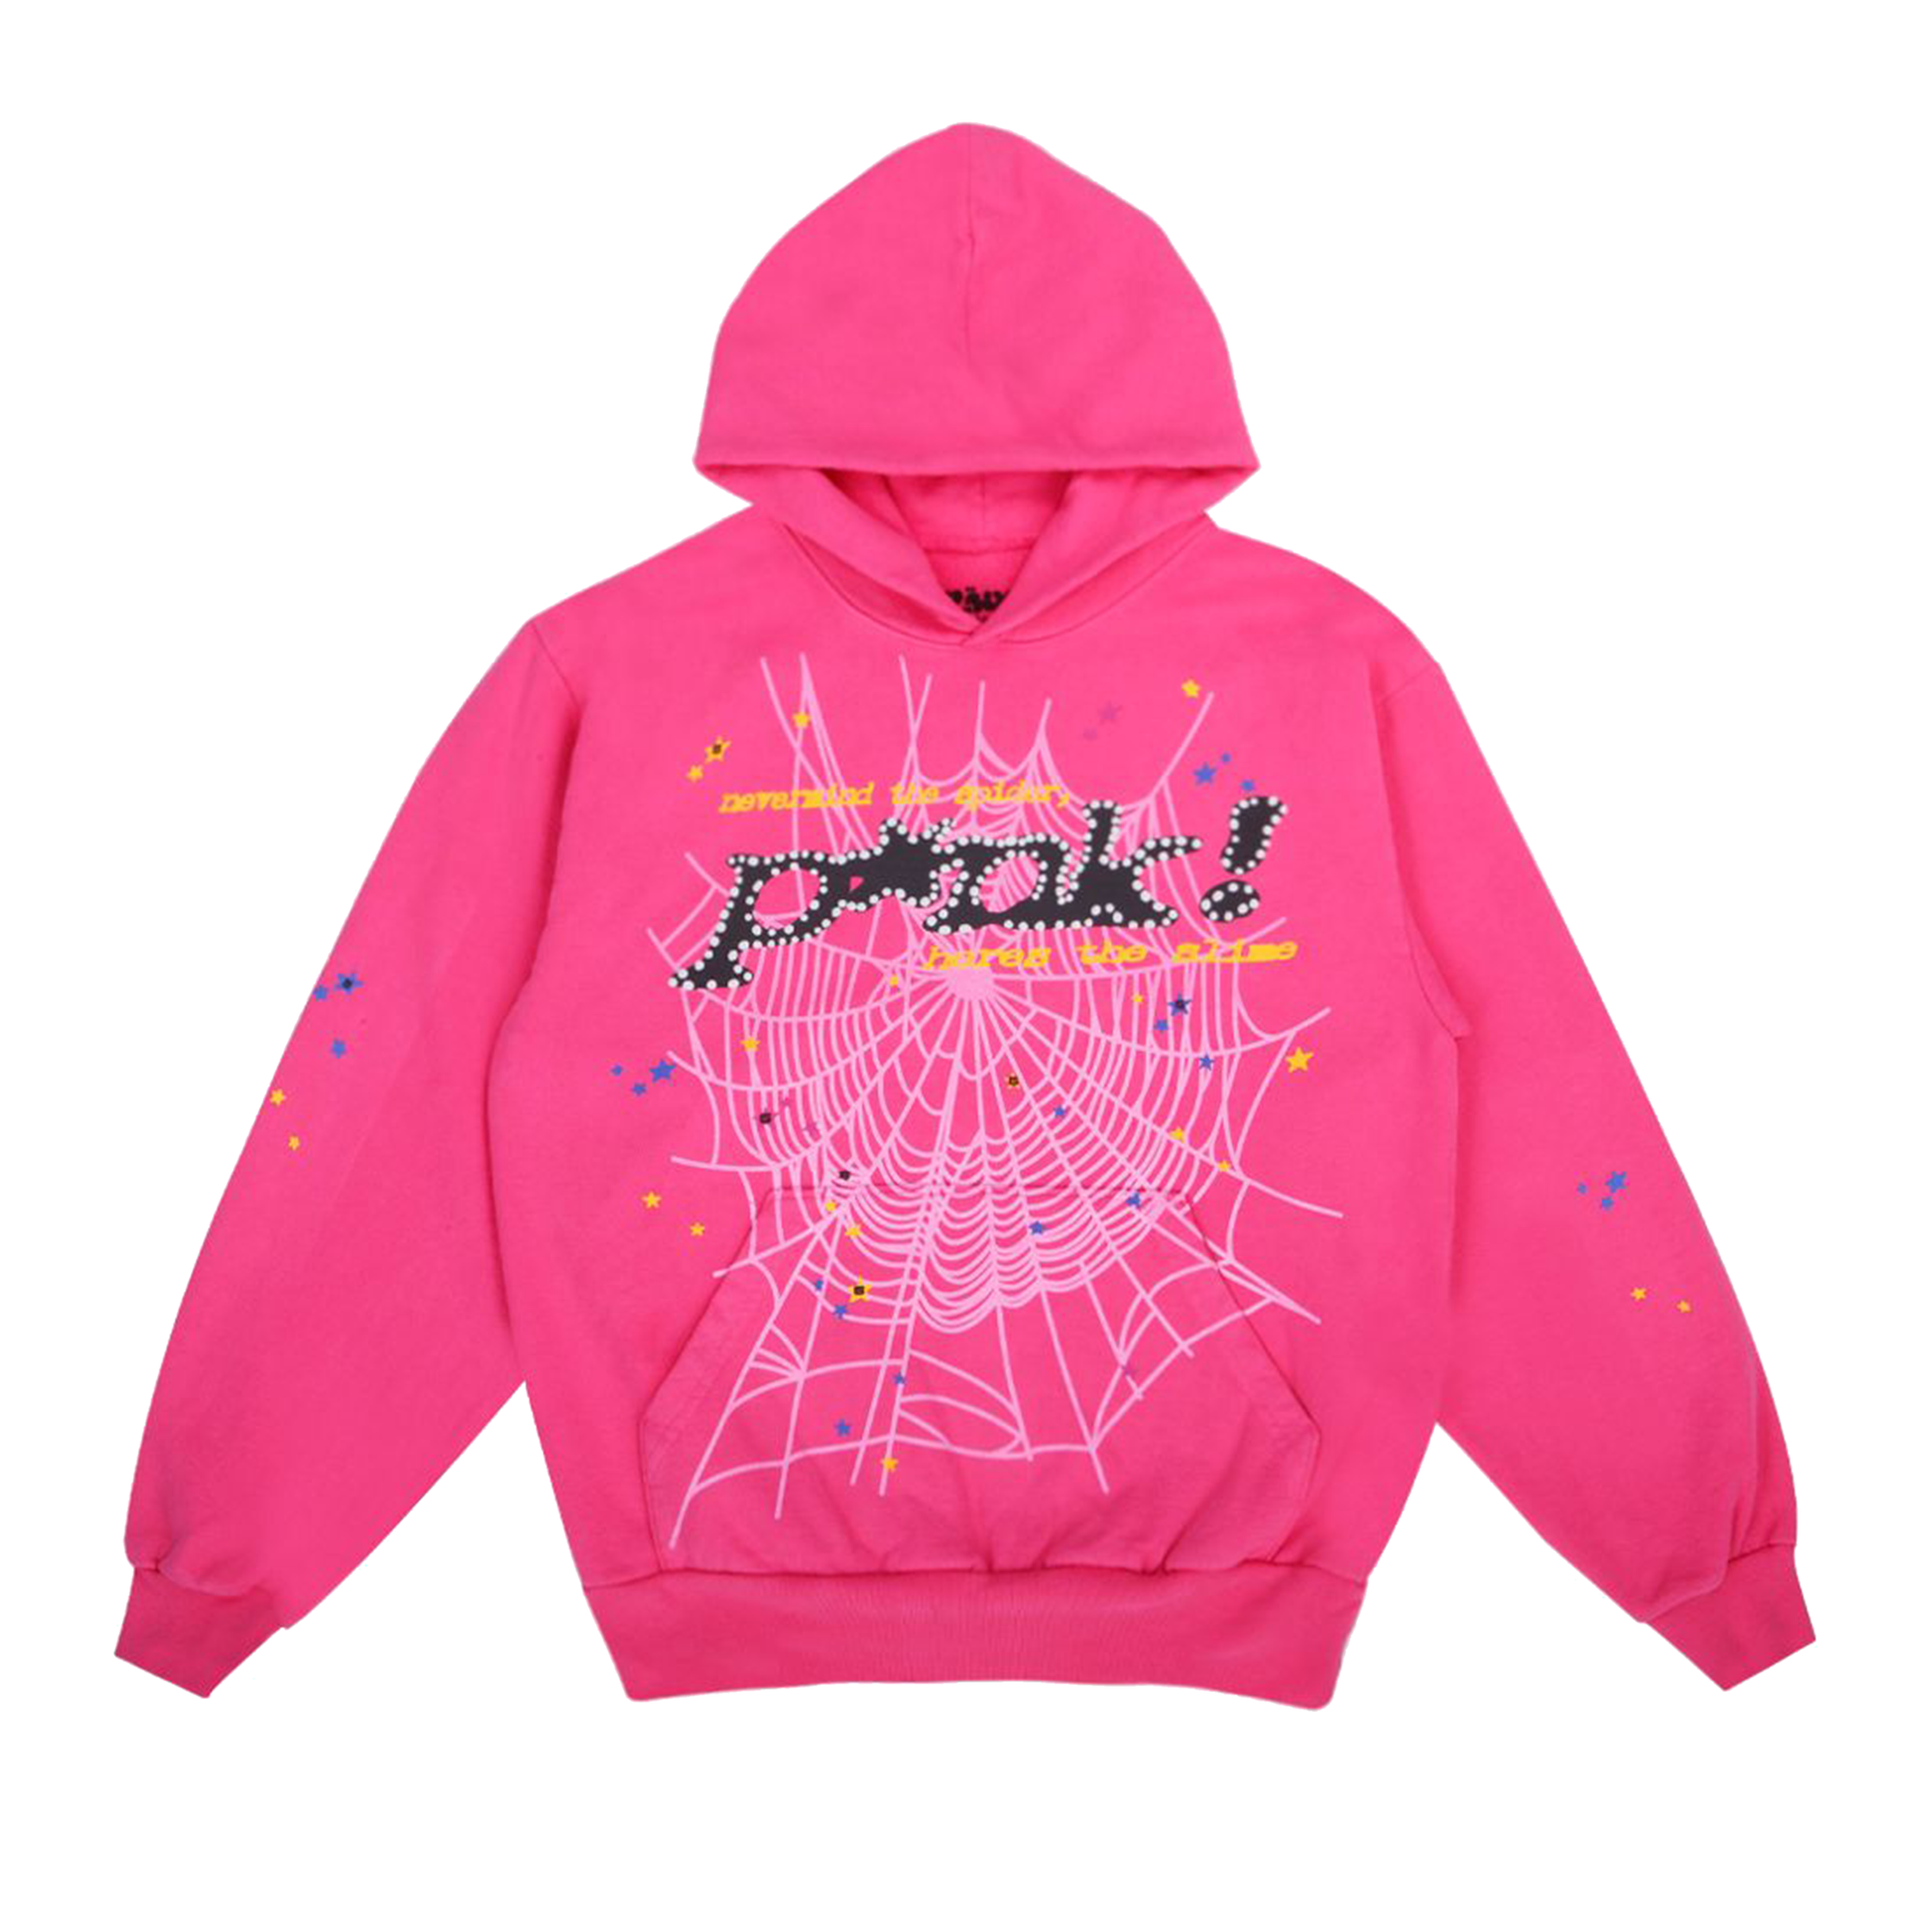 Sp5der Worldwide Punk Sweatshirt Pink